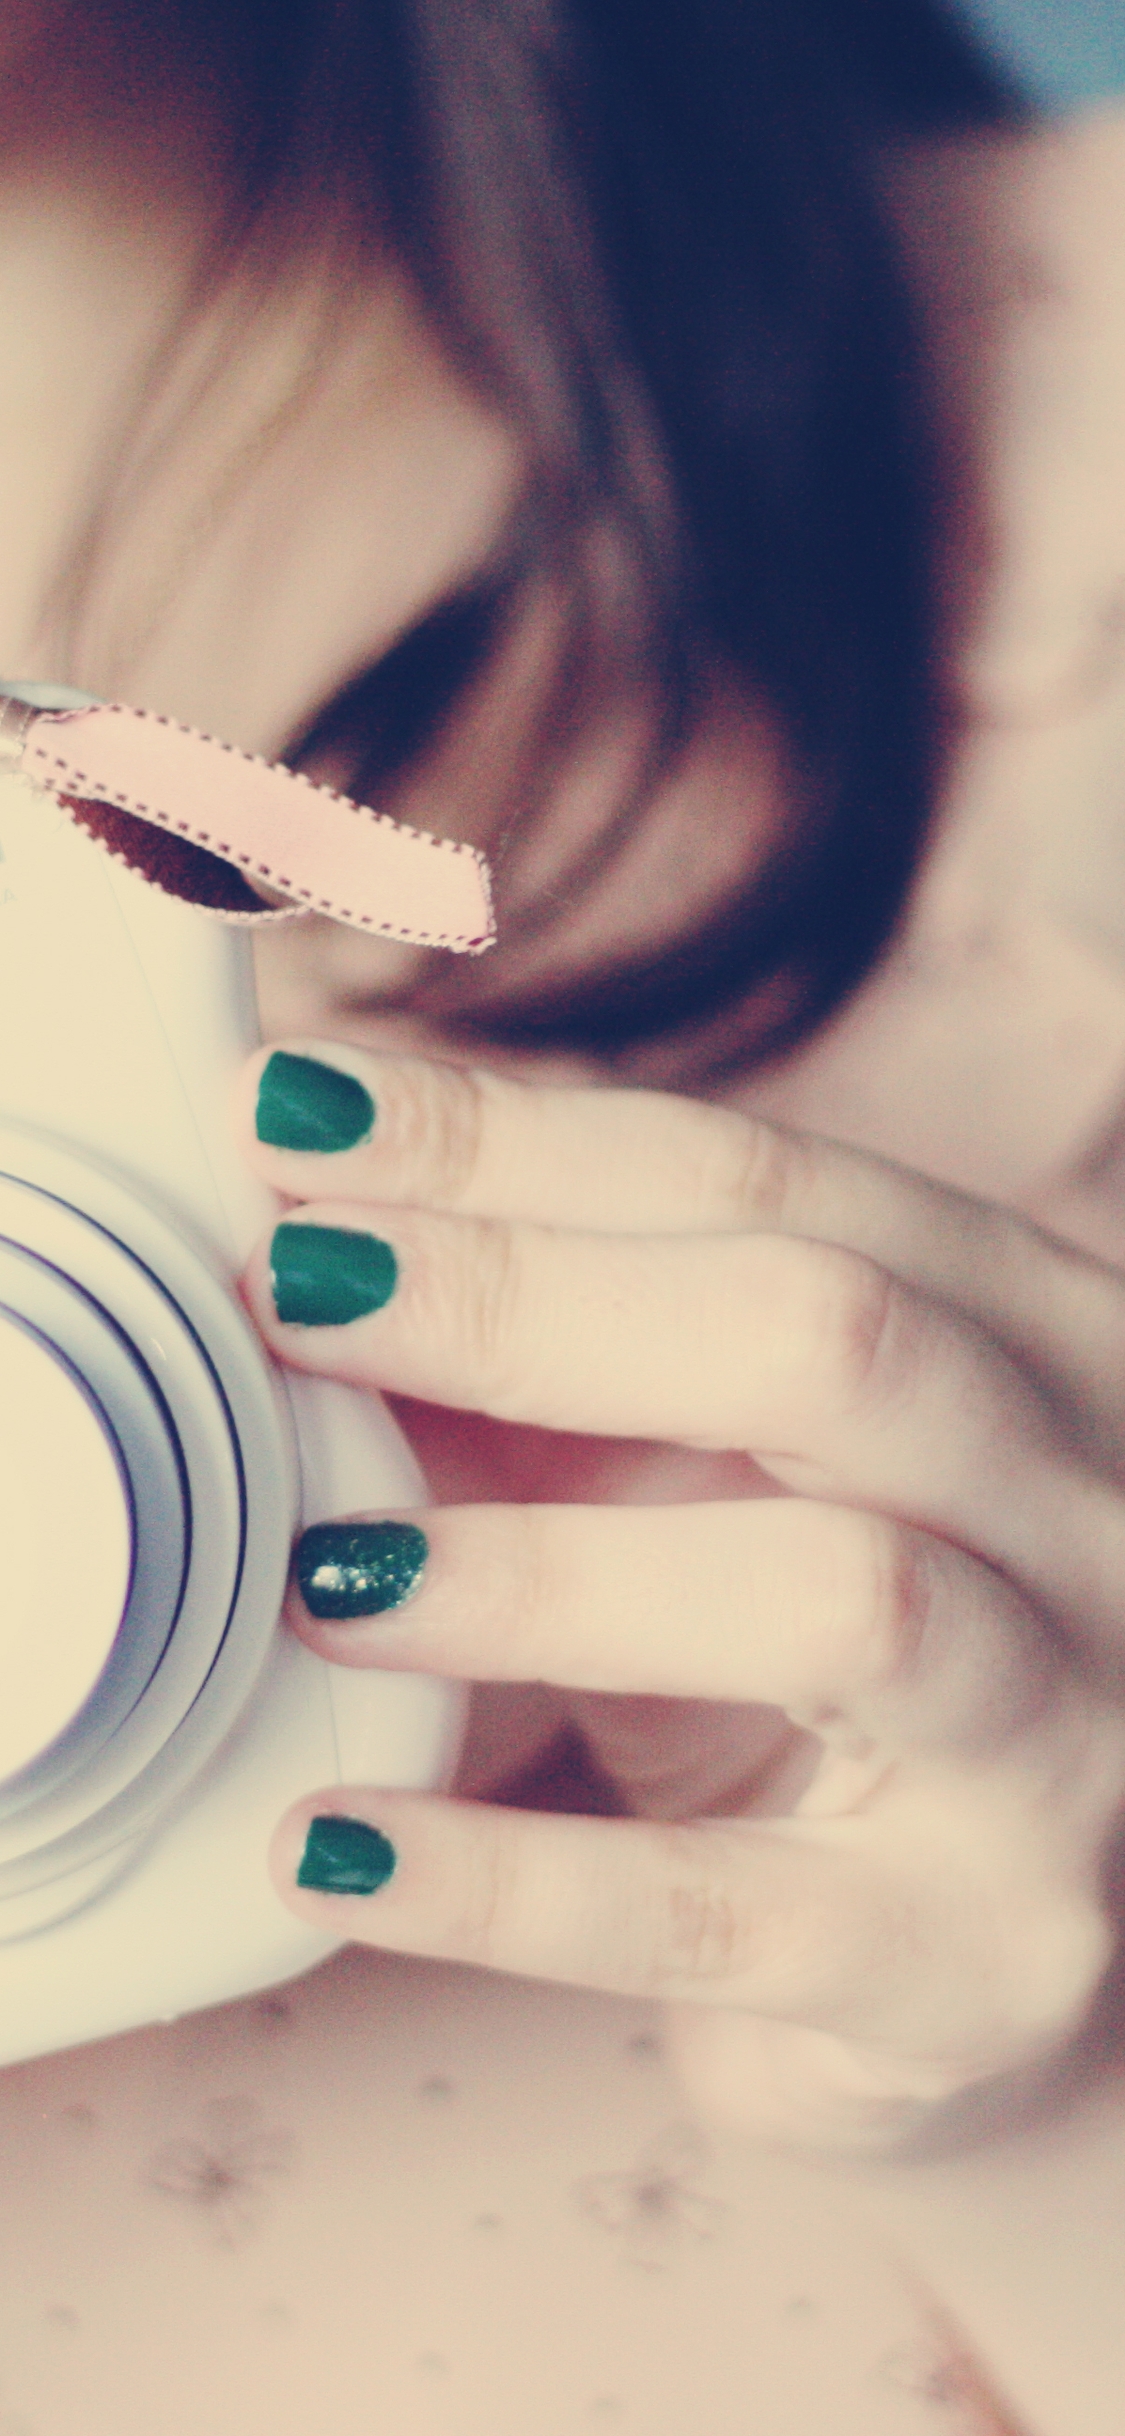 Image: Girl, camera, photo, manicure